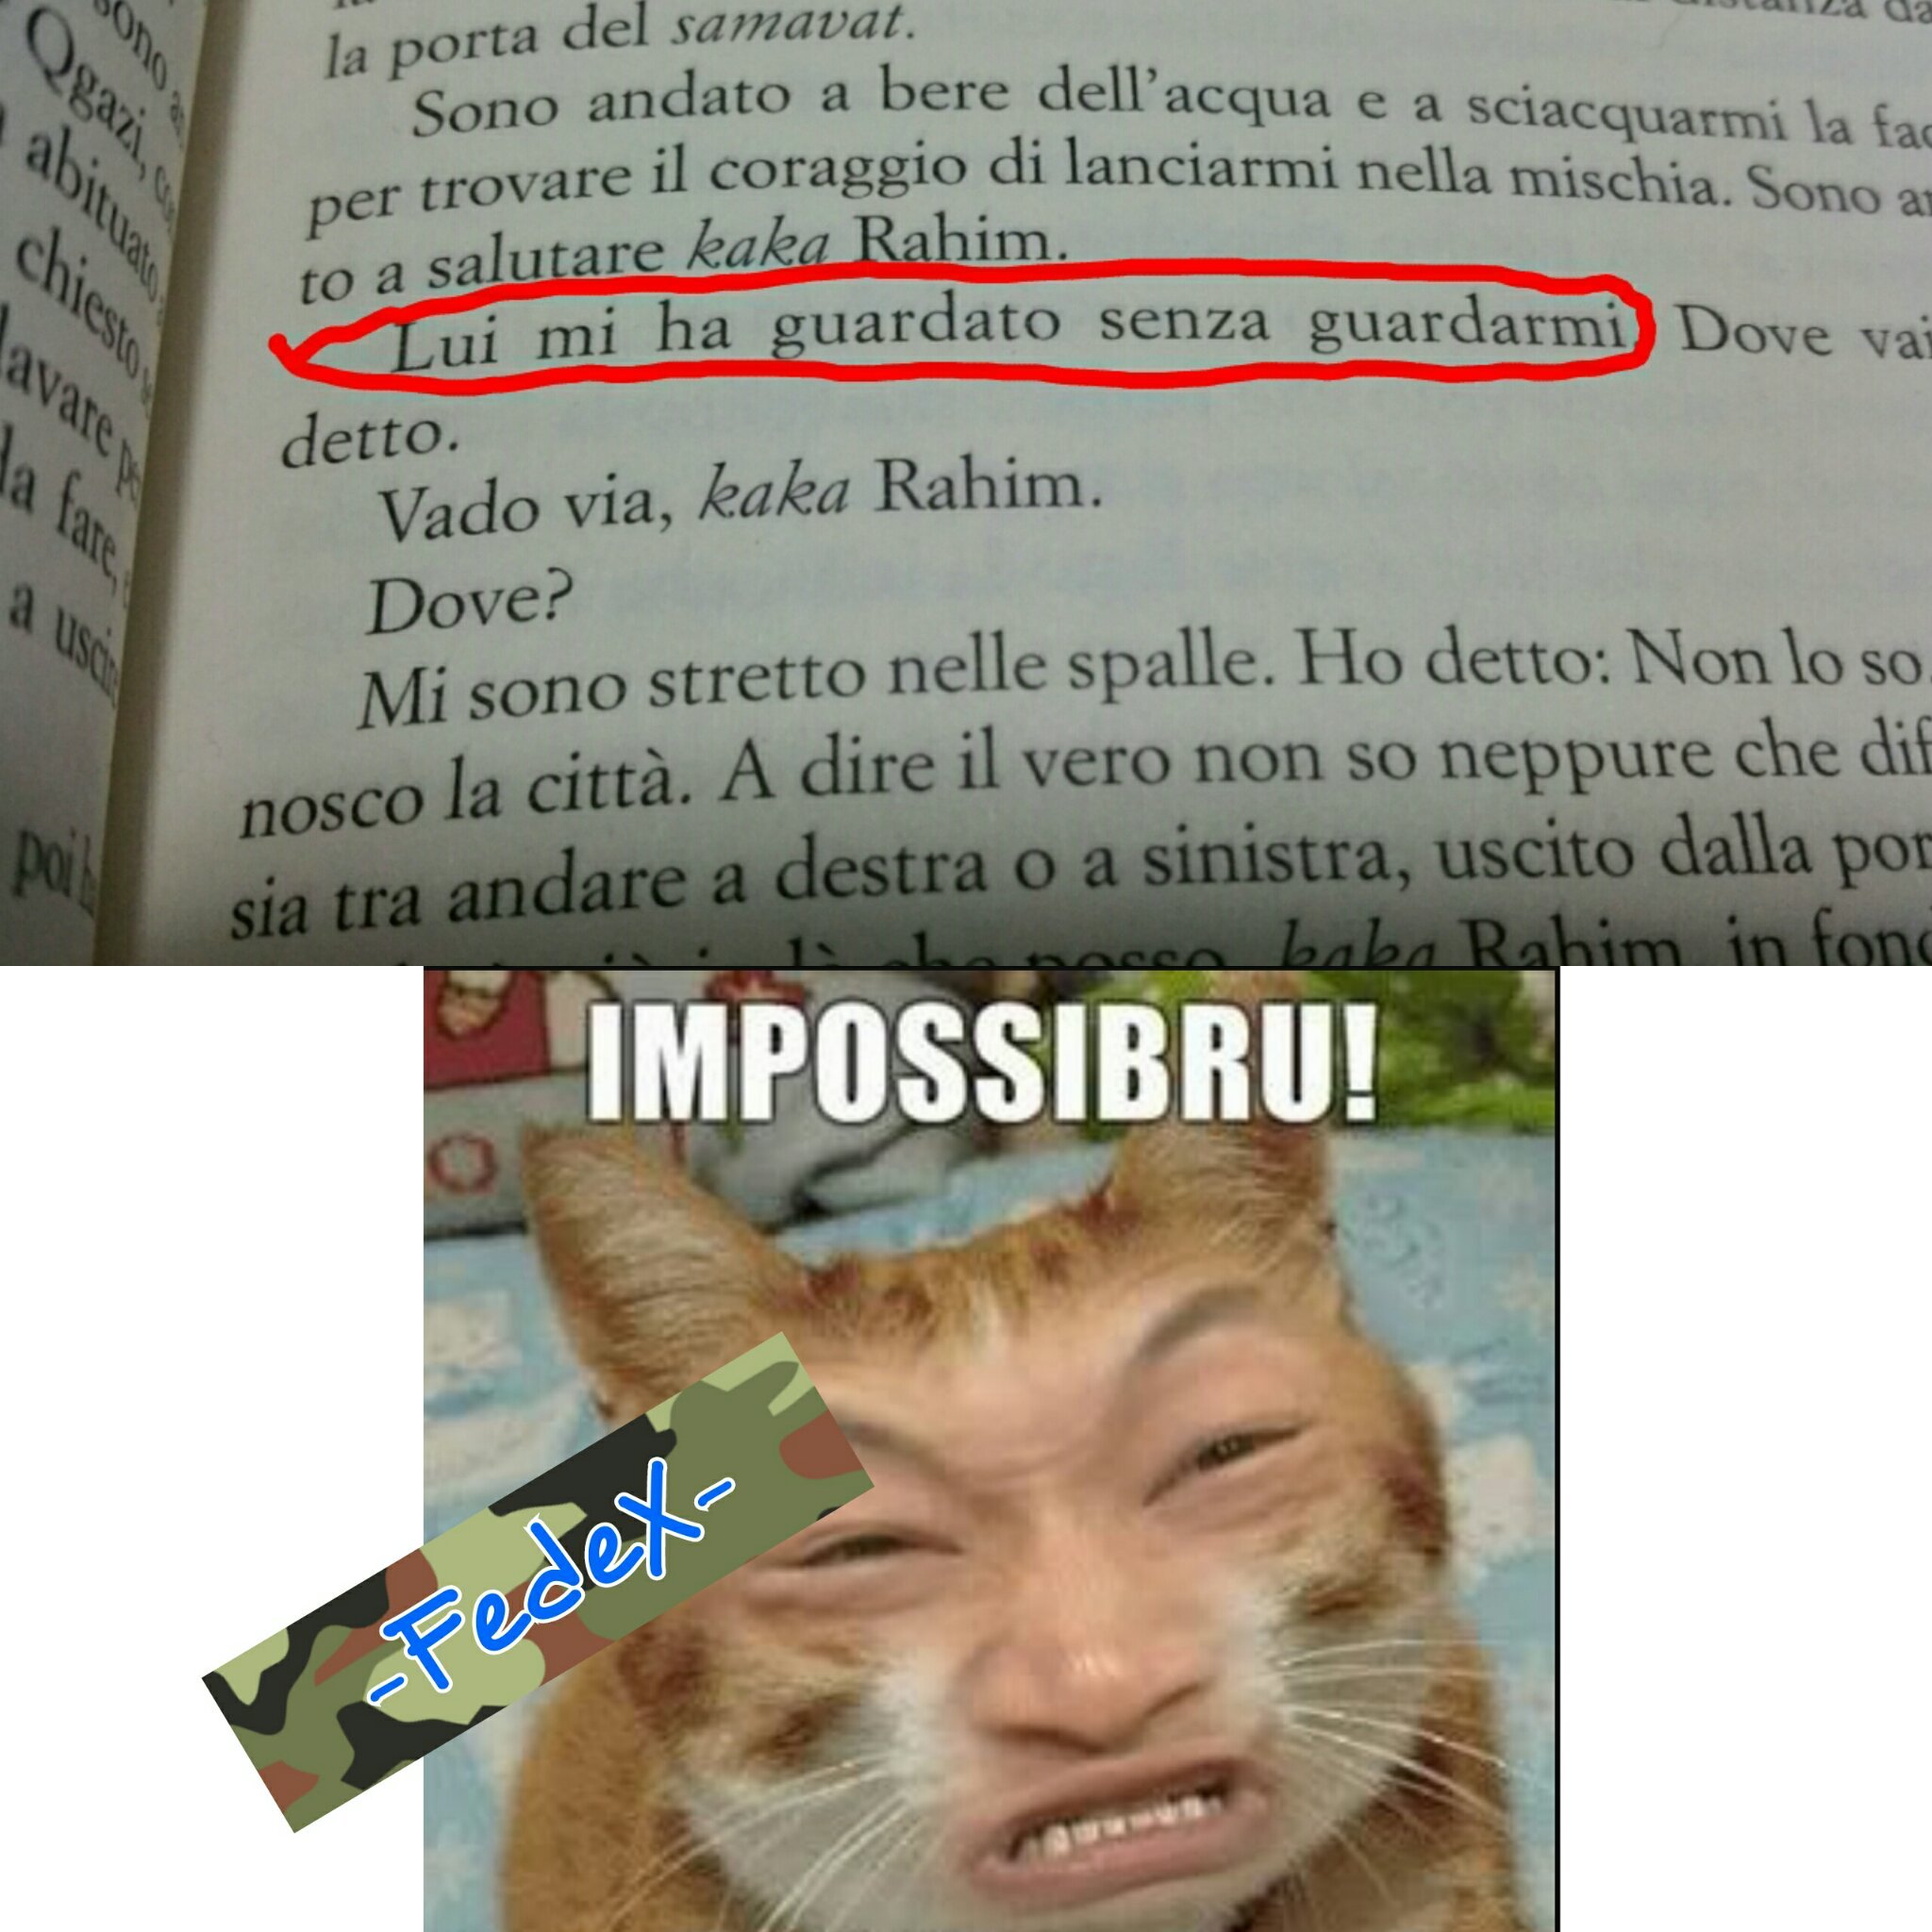 IMPOSSIBRU - meme